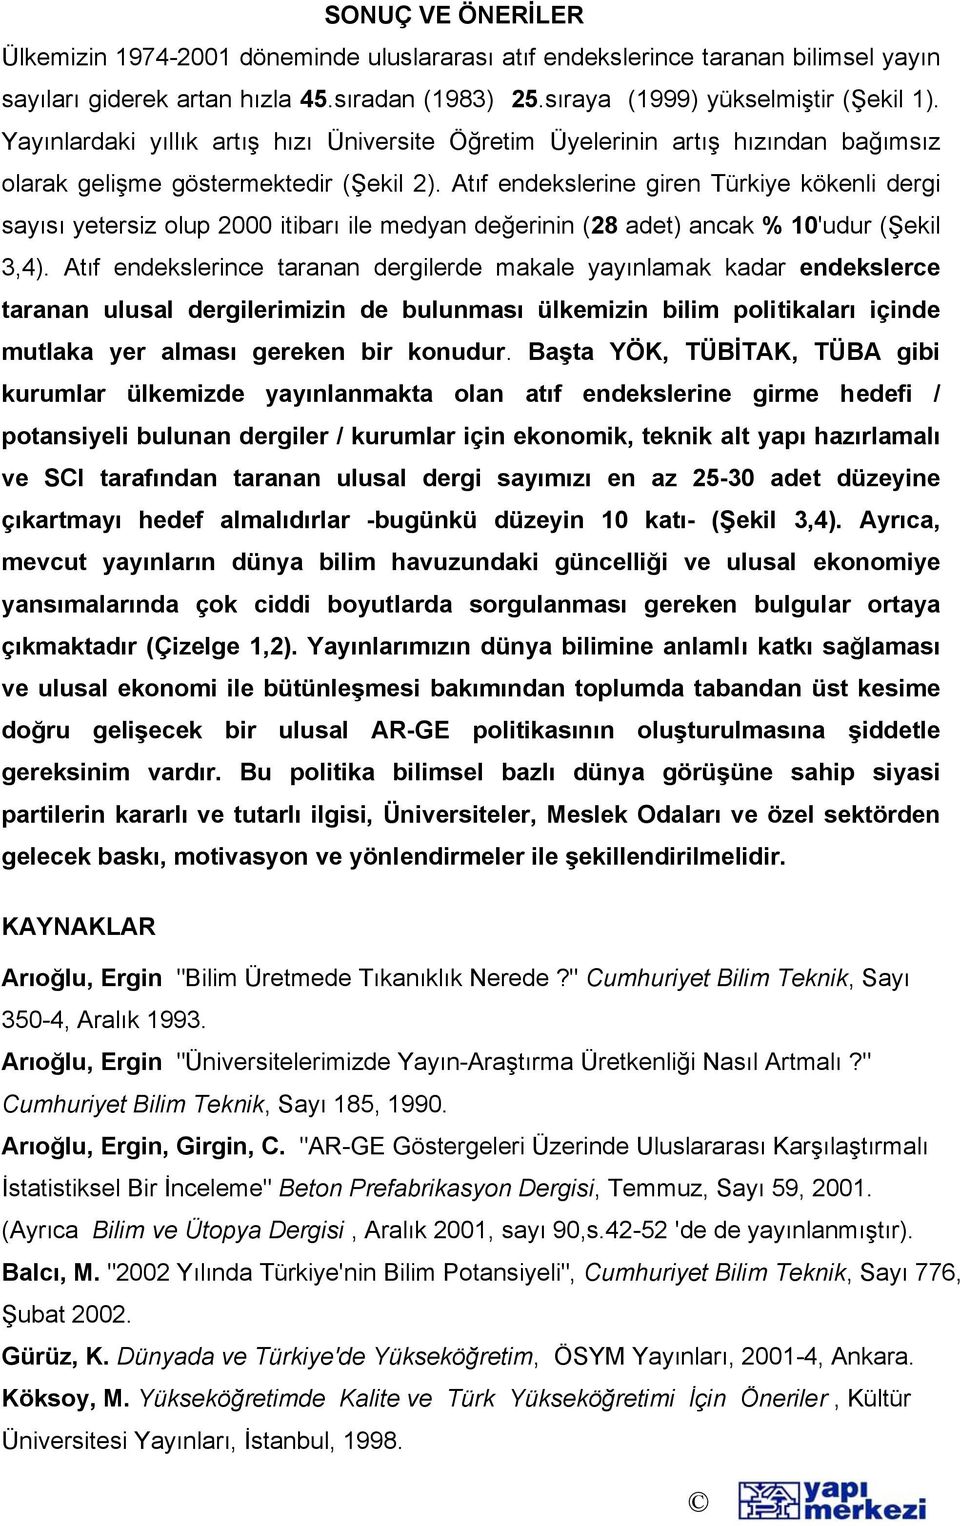 Atıf endekslerine giren Türkiye kökenli dergi sayısı yetersiz olup 2000 itibarı ile medyan değerinin (28 adet) ancak % 10'udur (Şekil 3,4).